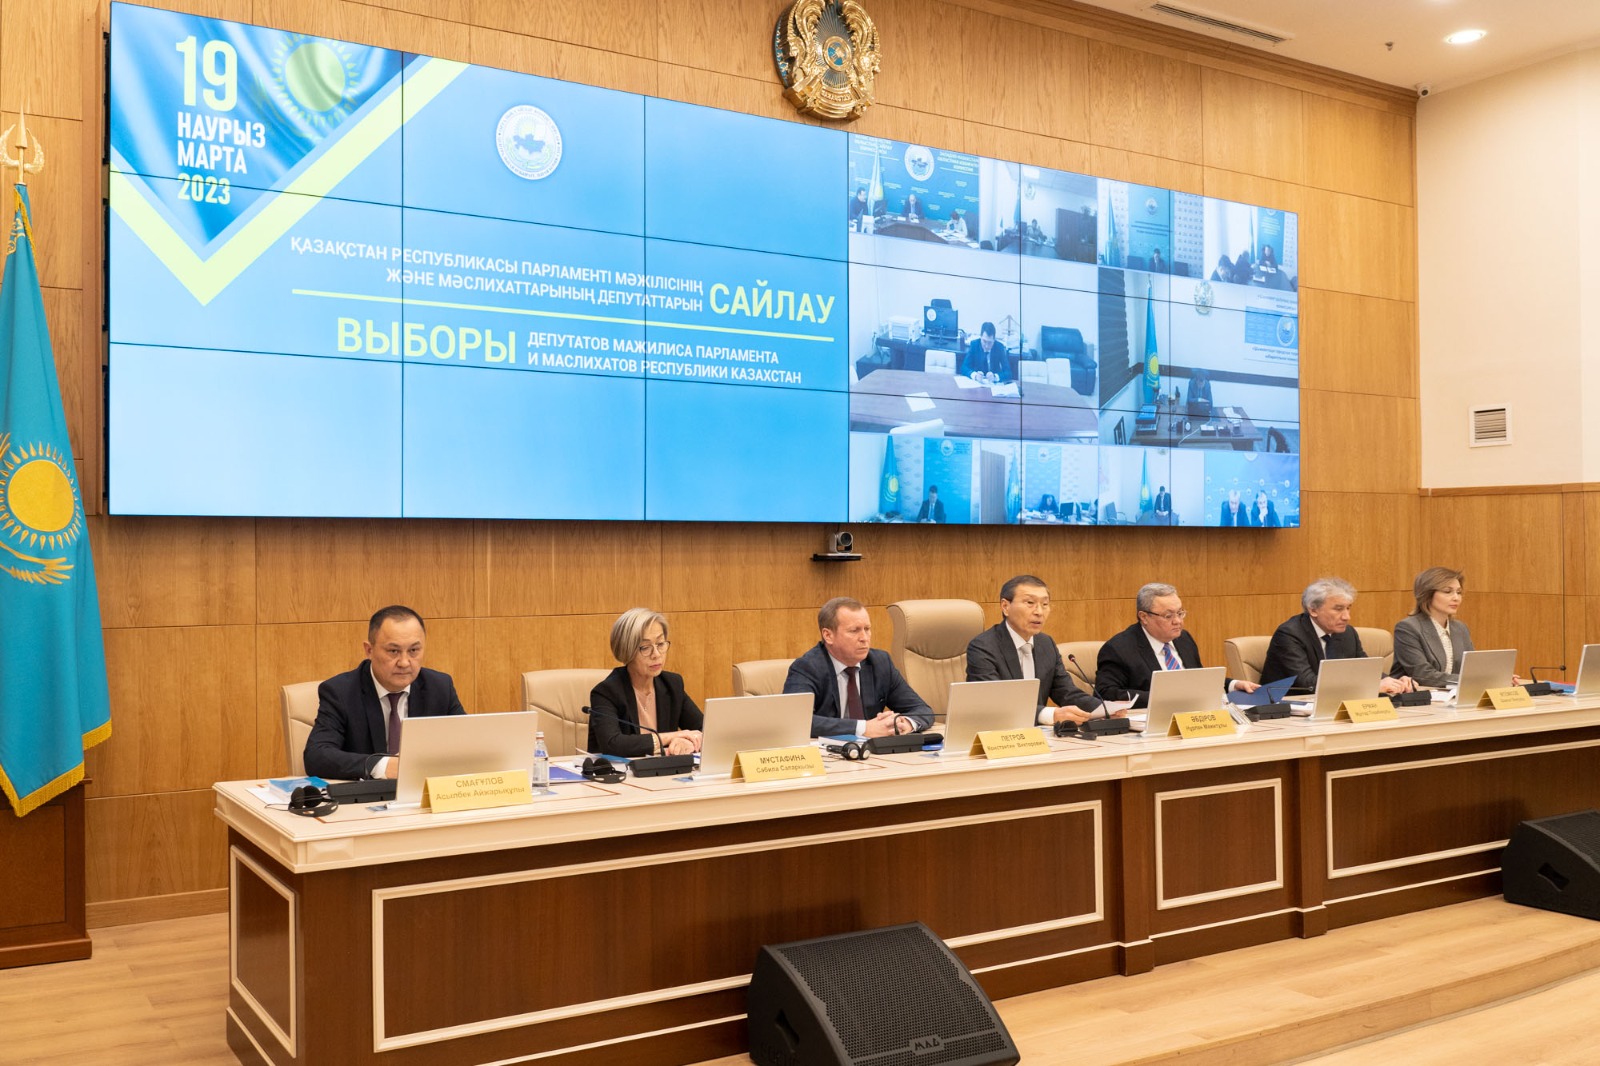 ЦИК Казахстана аккредитовал 62 международных наблюдателя в преддверии выборов - Bizmedia.kz